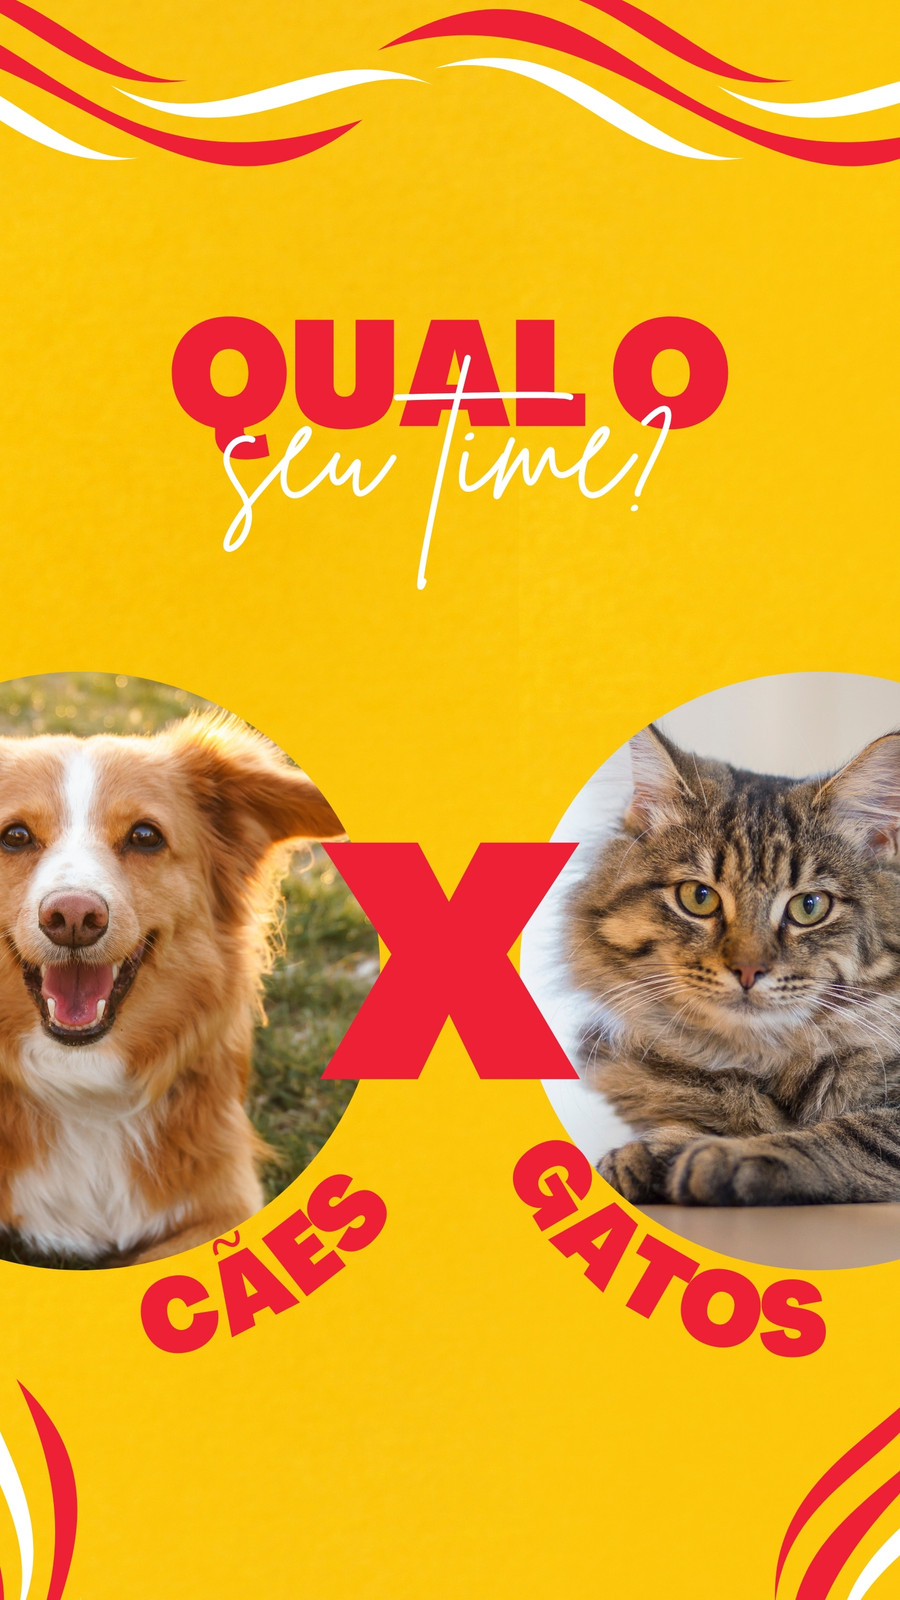 Logotipo fofinho da petshop com gato e cachorro